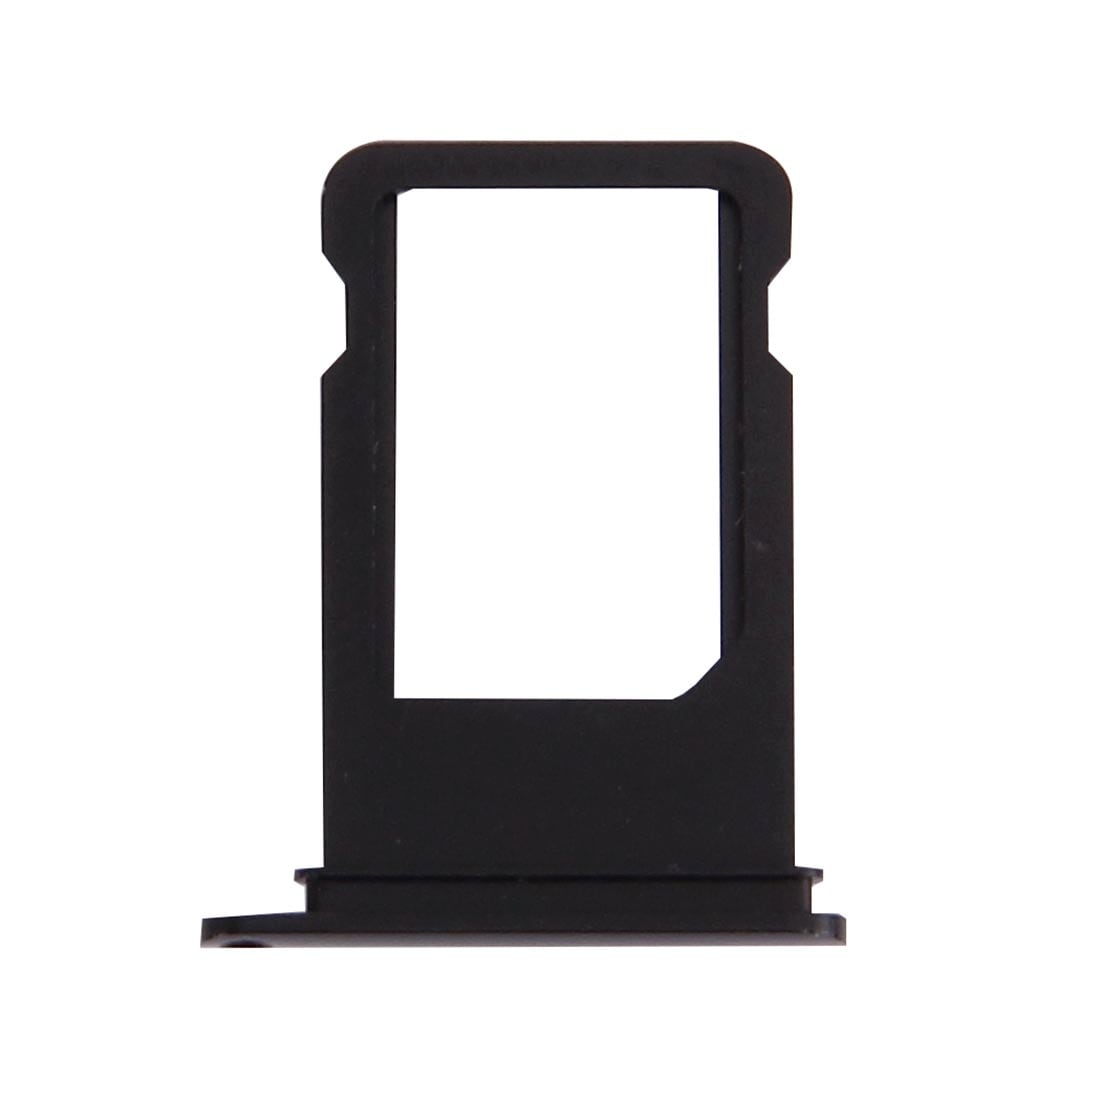 Simkortshållare för iPhone 7 - svart